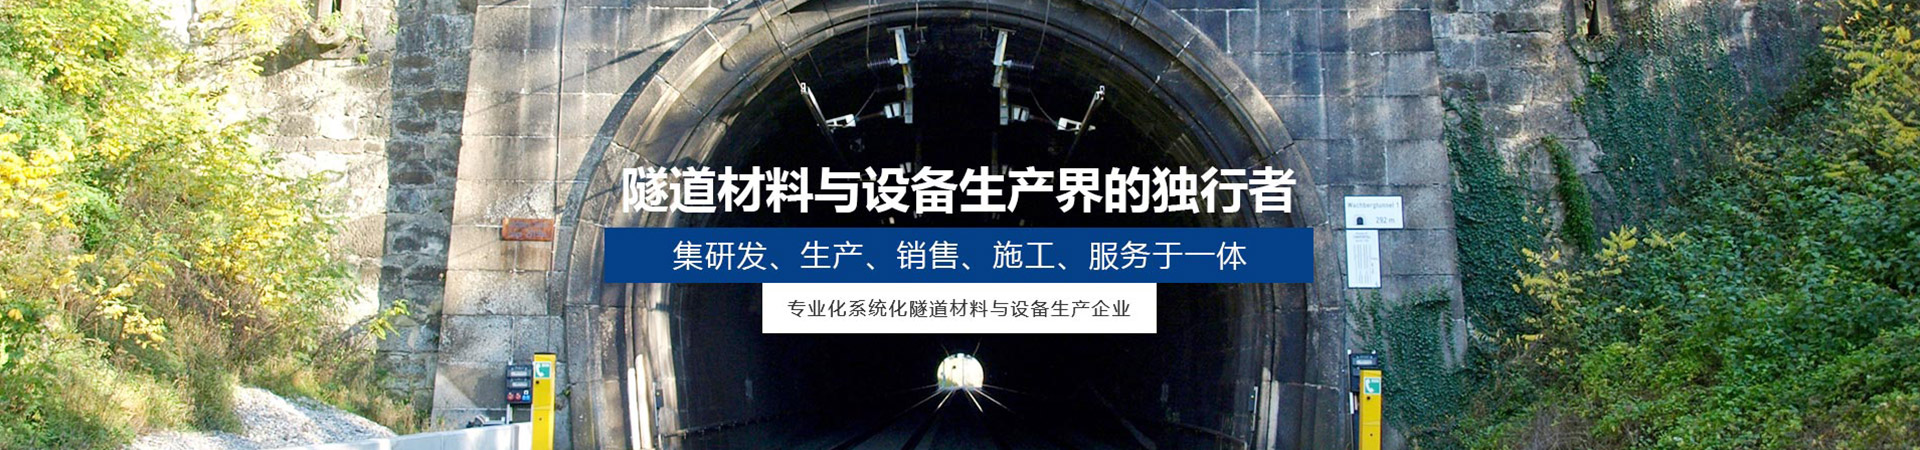 隧道设备哪家好_CHY系列建筑项目合作施工-四川皓德斯新材料科技有限公司官网